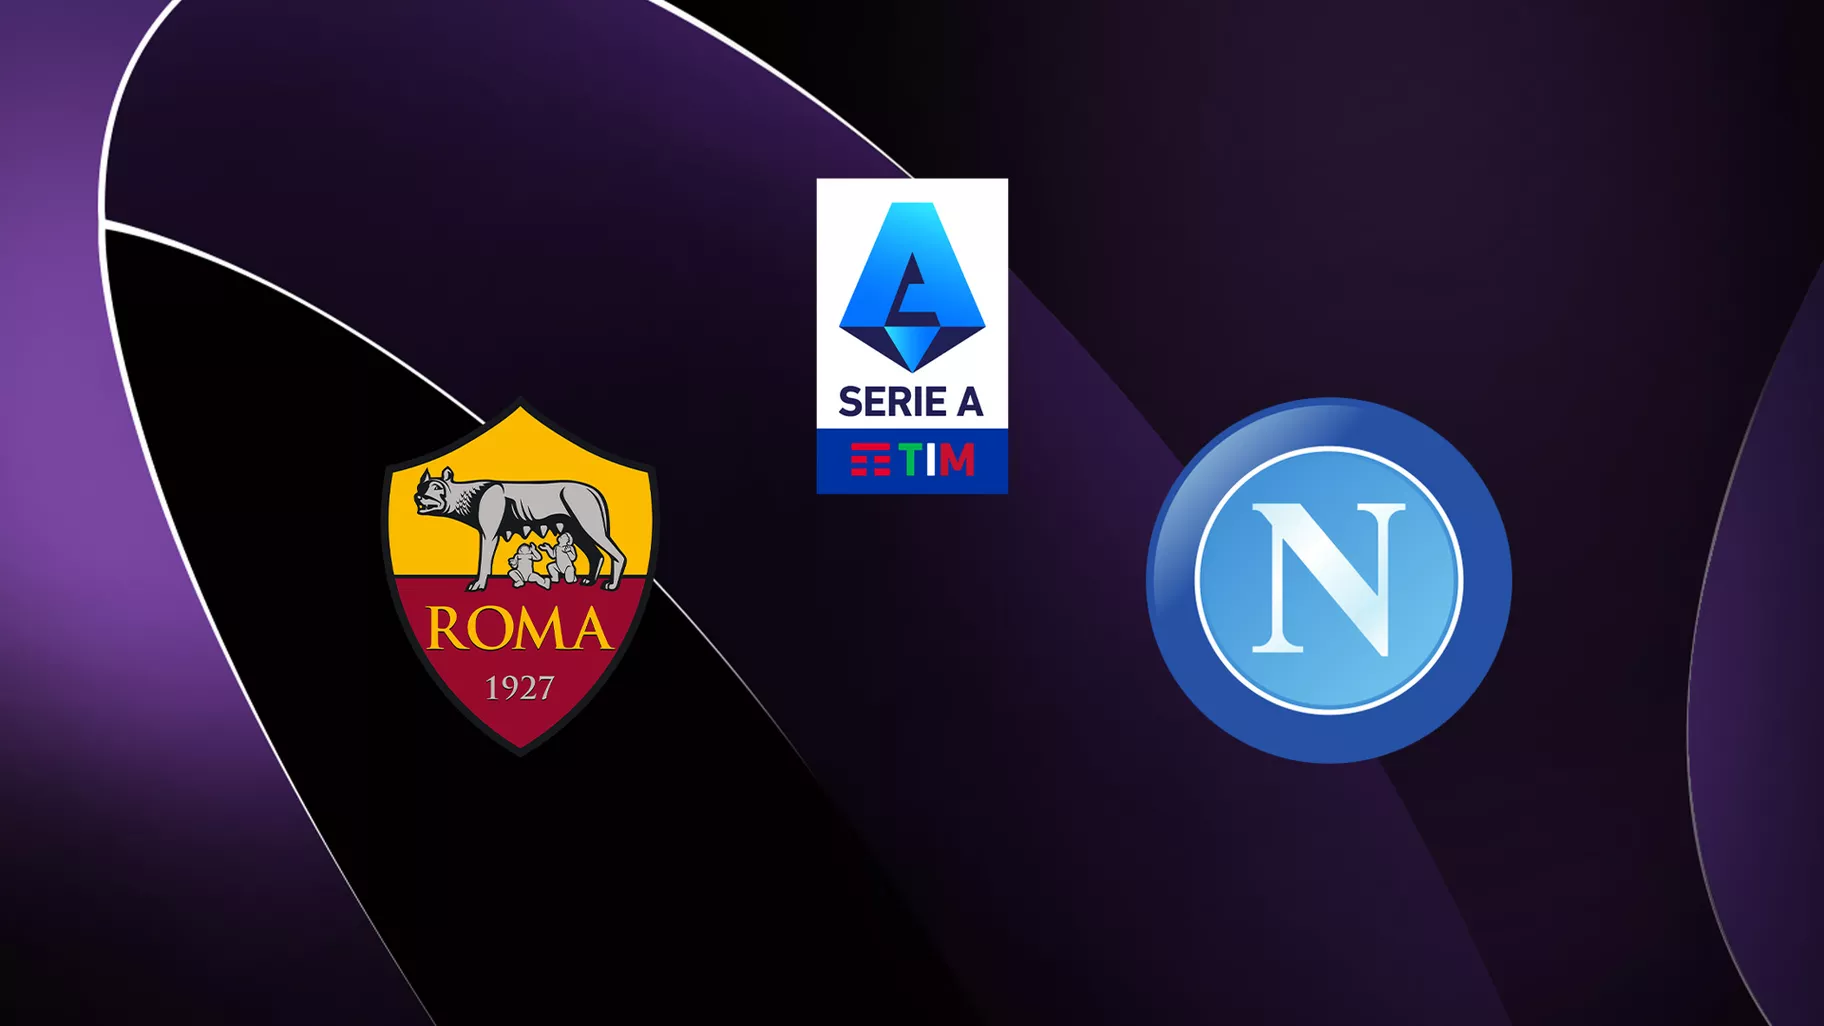 AS Rome / Naples (TV/Streaming) Sur quelle chaîne et à quelle heure regarder le match de Serie A ?